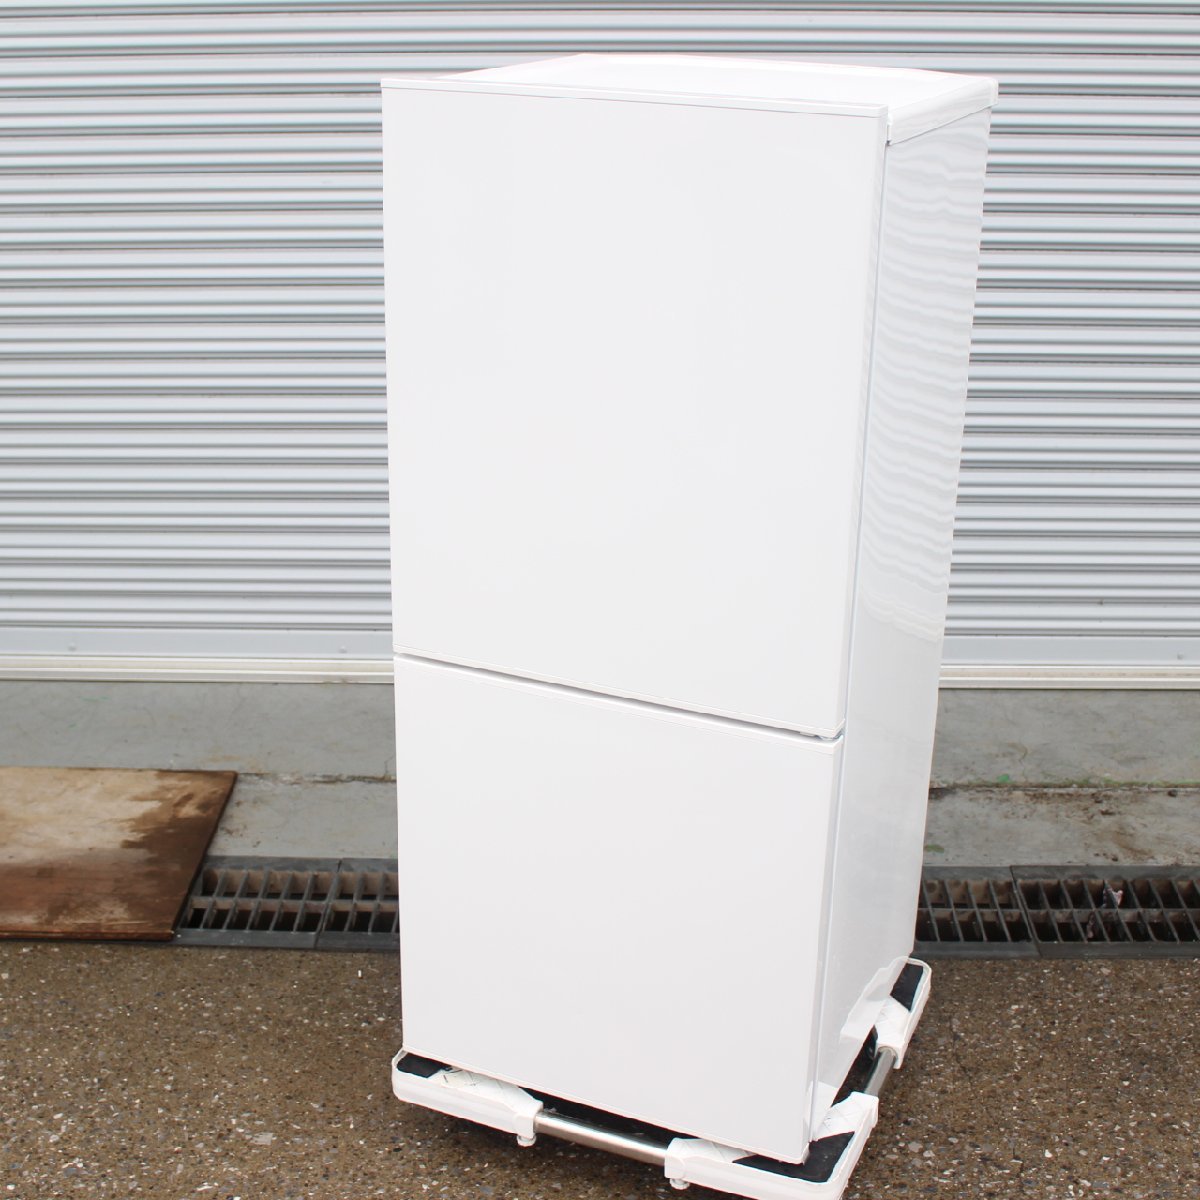 川崎市川崎区にて ツインバード 冷蔵庫 HR-E911型 2020年製 を出張買取させて頂きました。